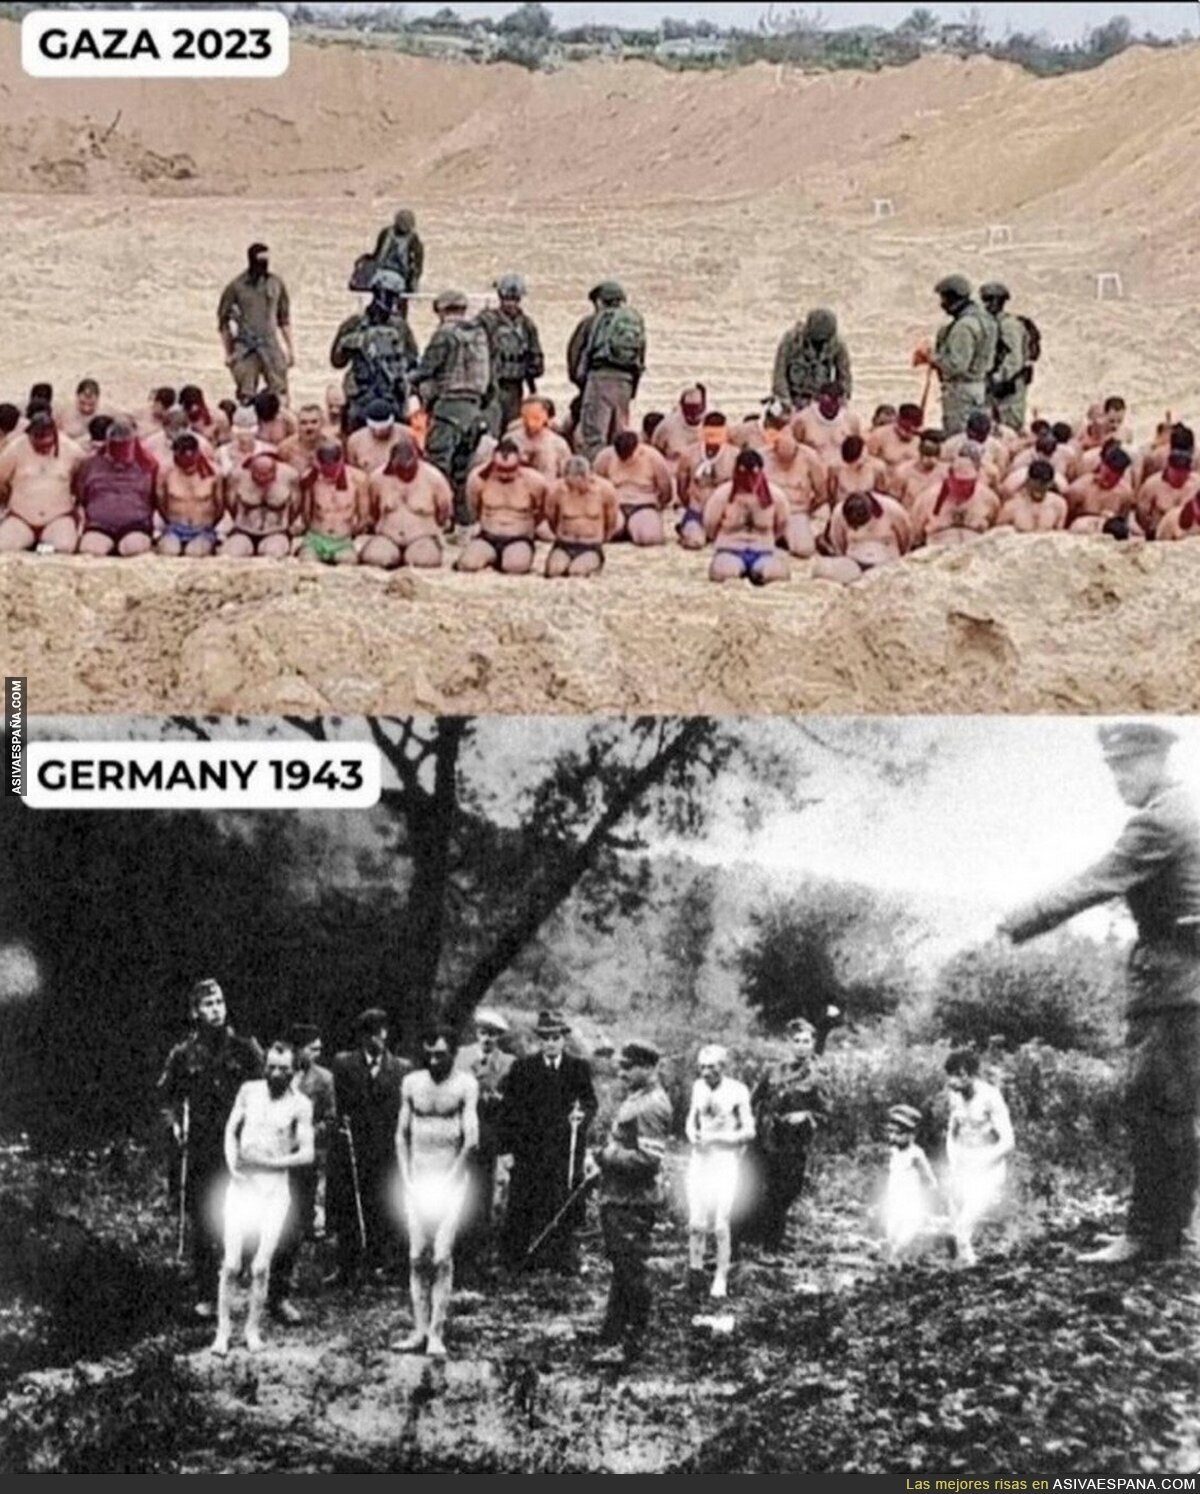 GAZA 2023 = GERMANY 1943